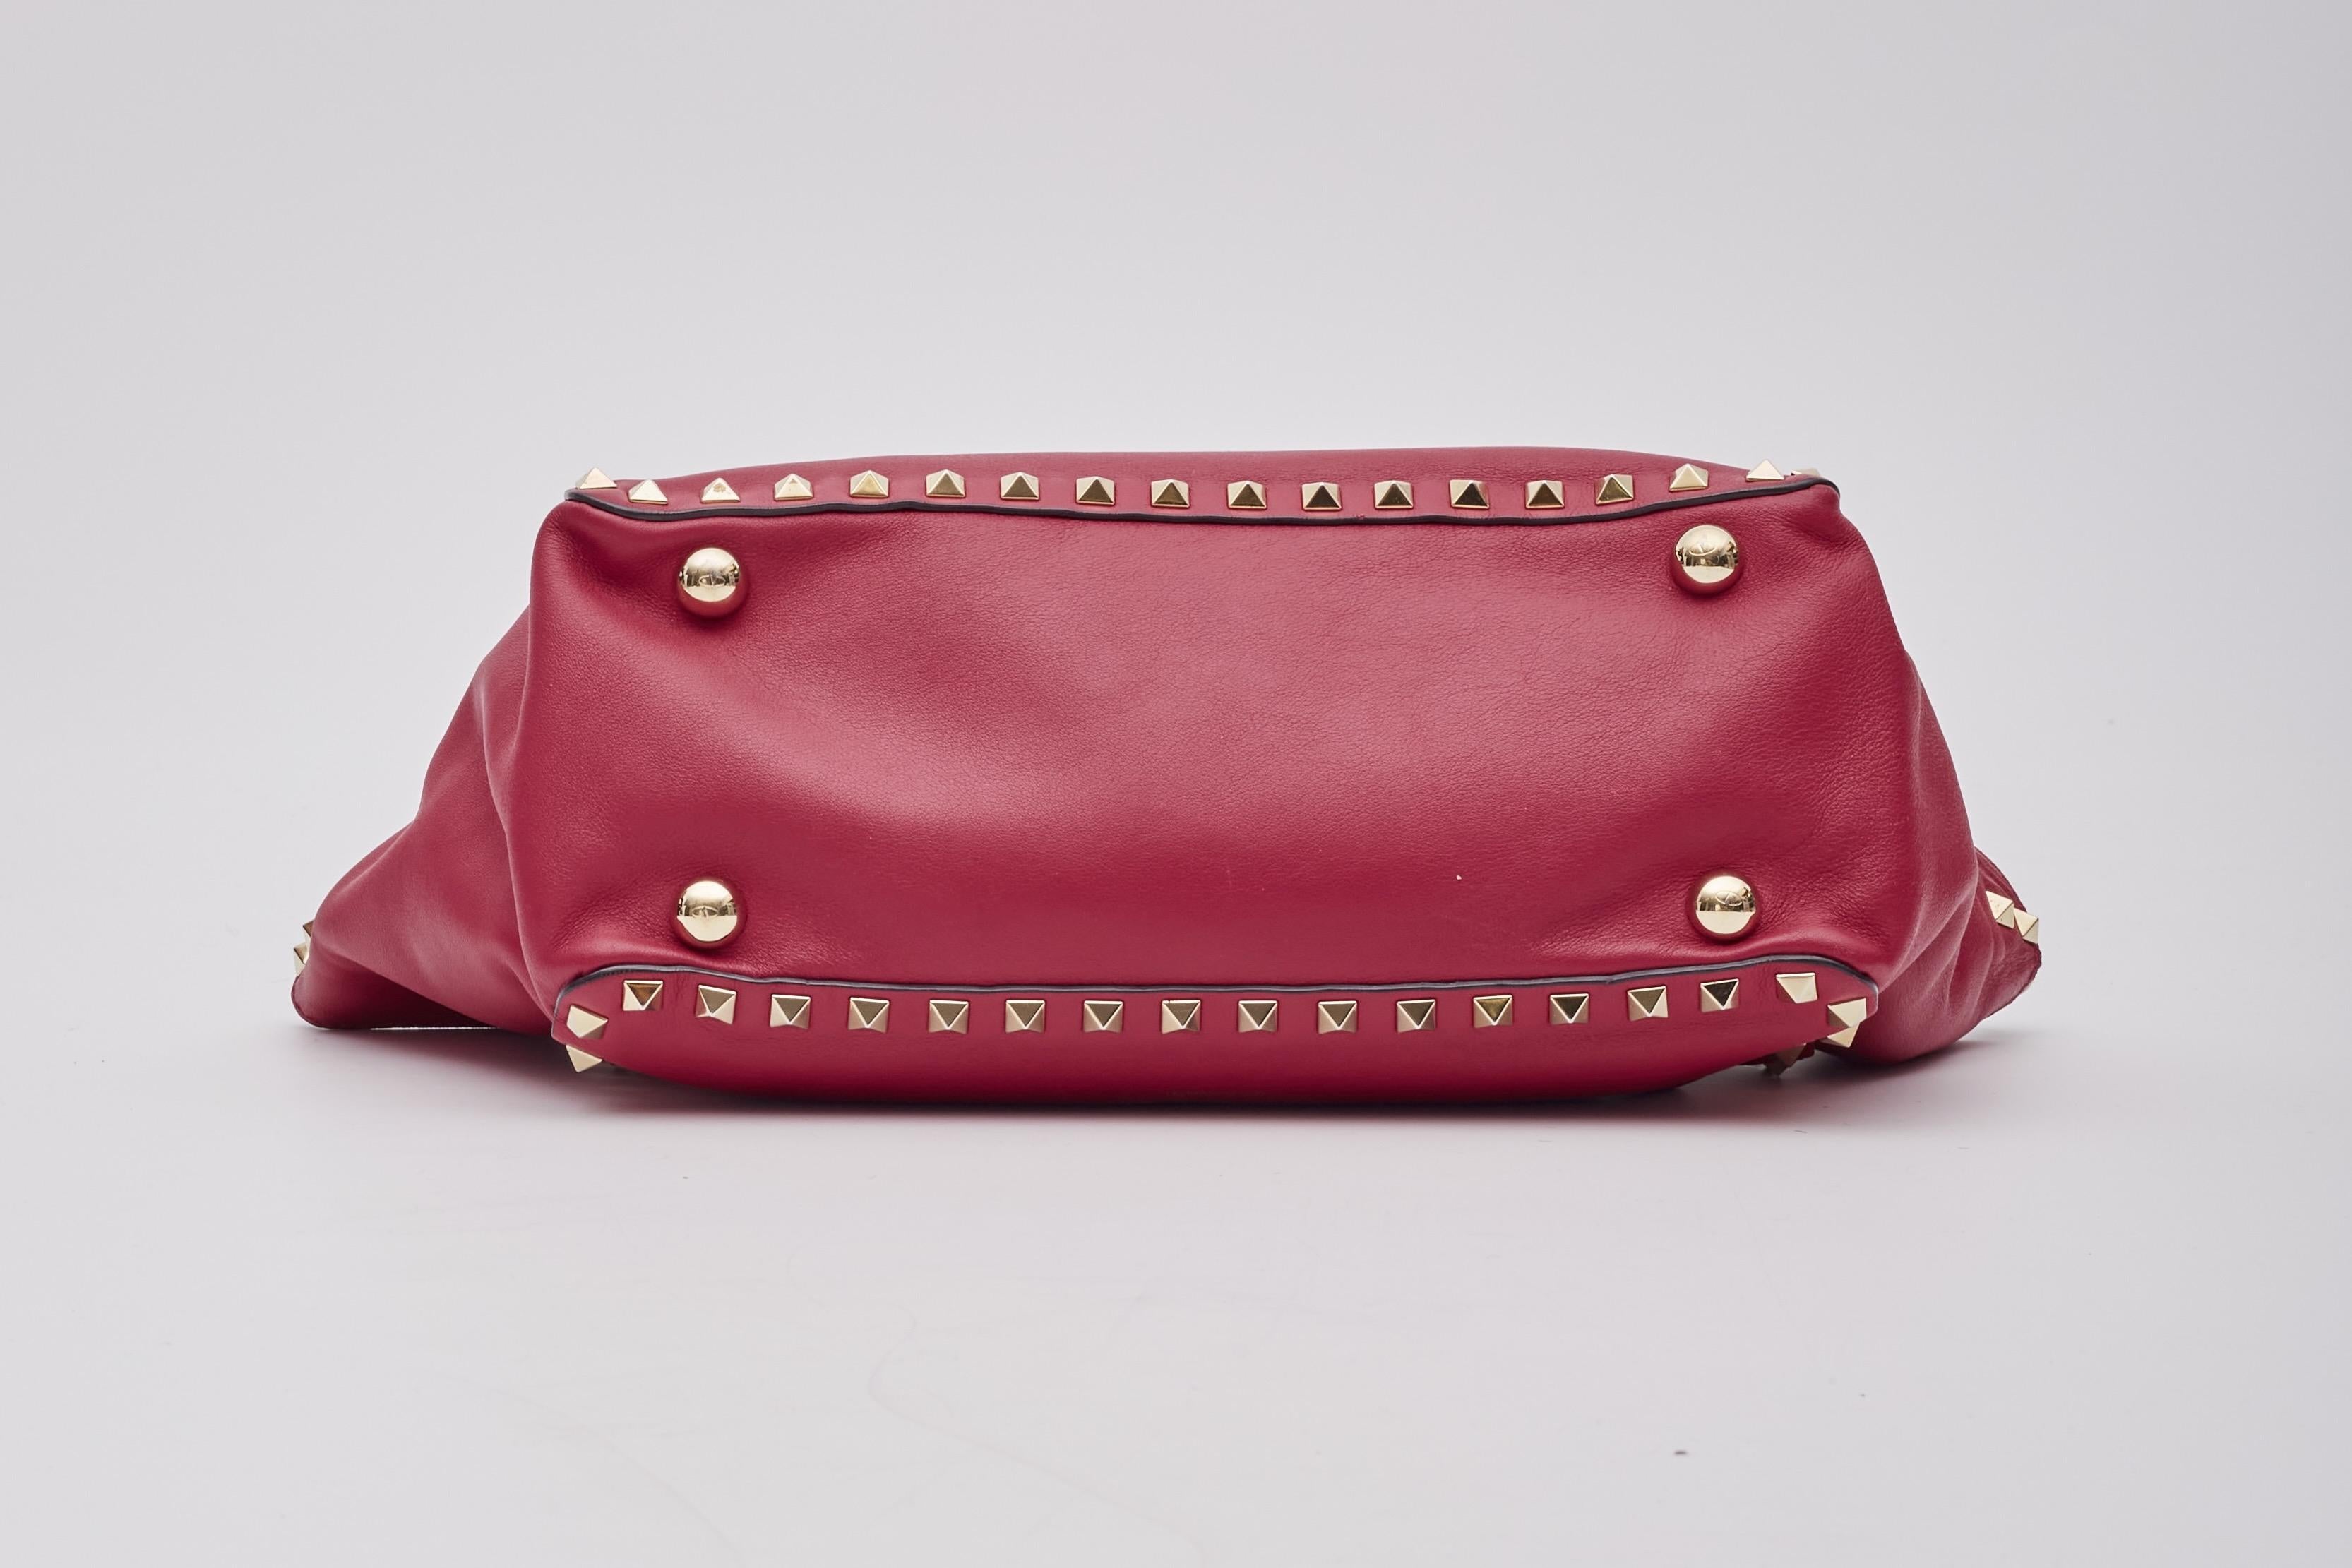 Valentino Garavani Red Leather Rockstud Shoulder Bag 2